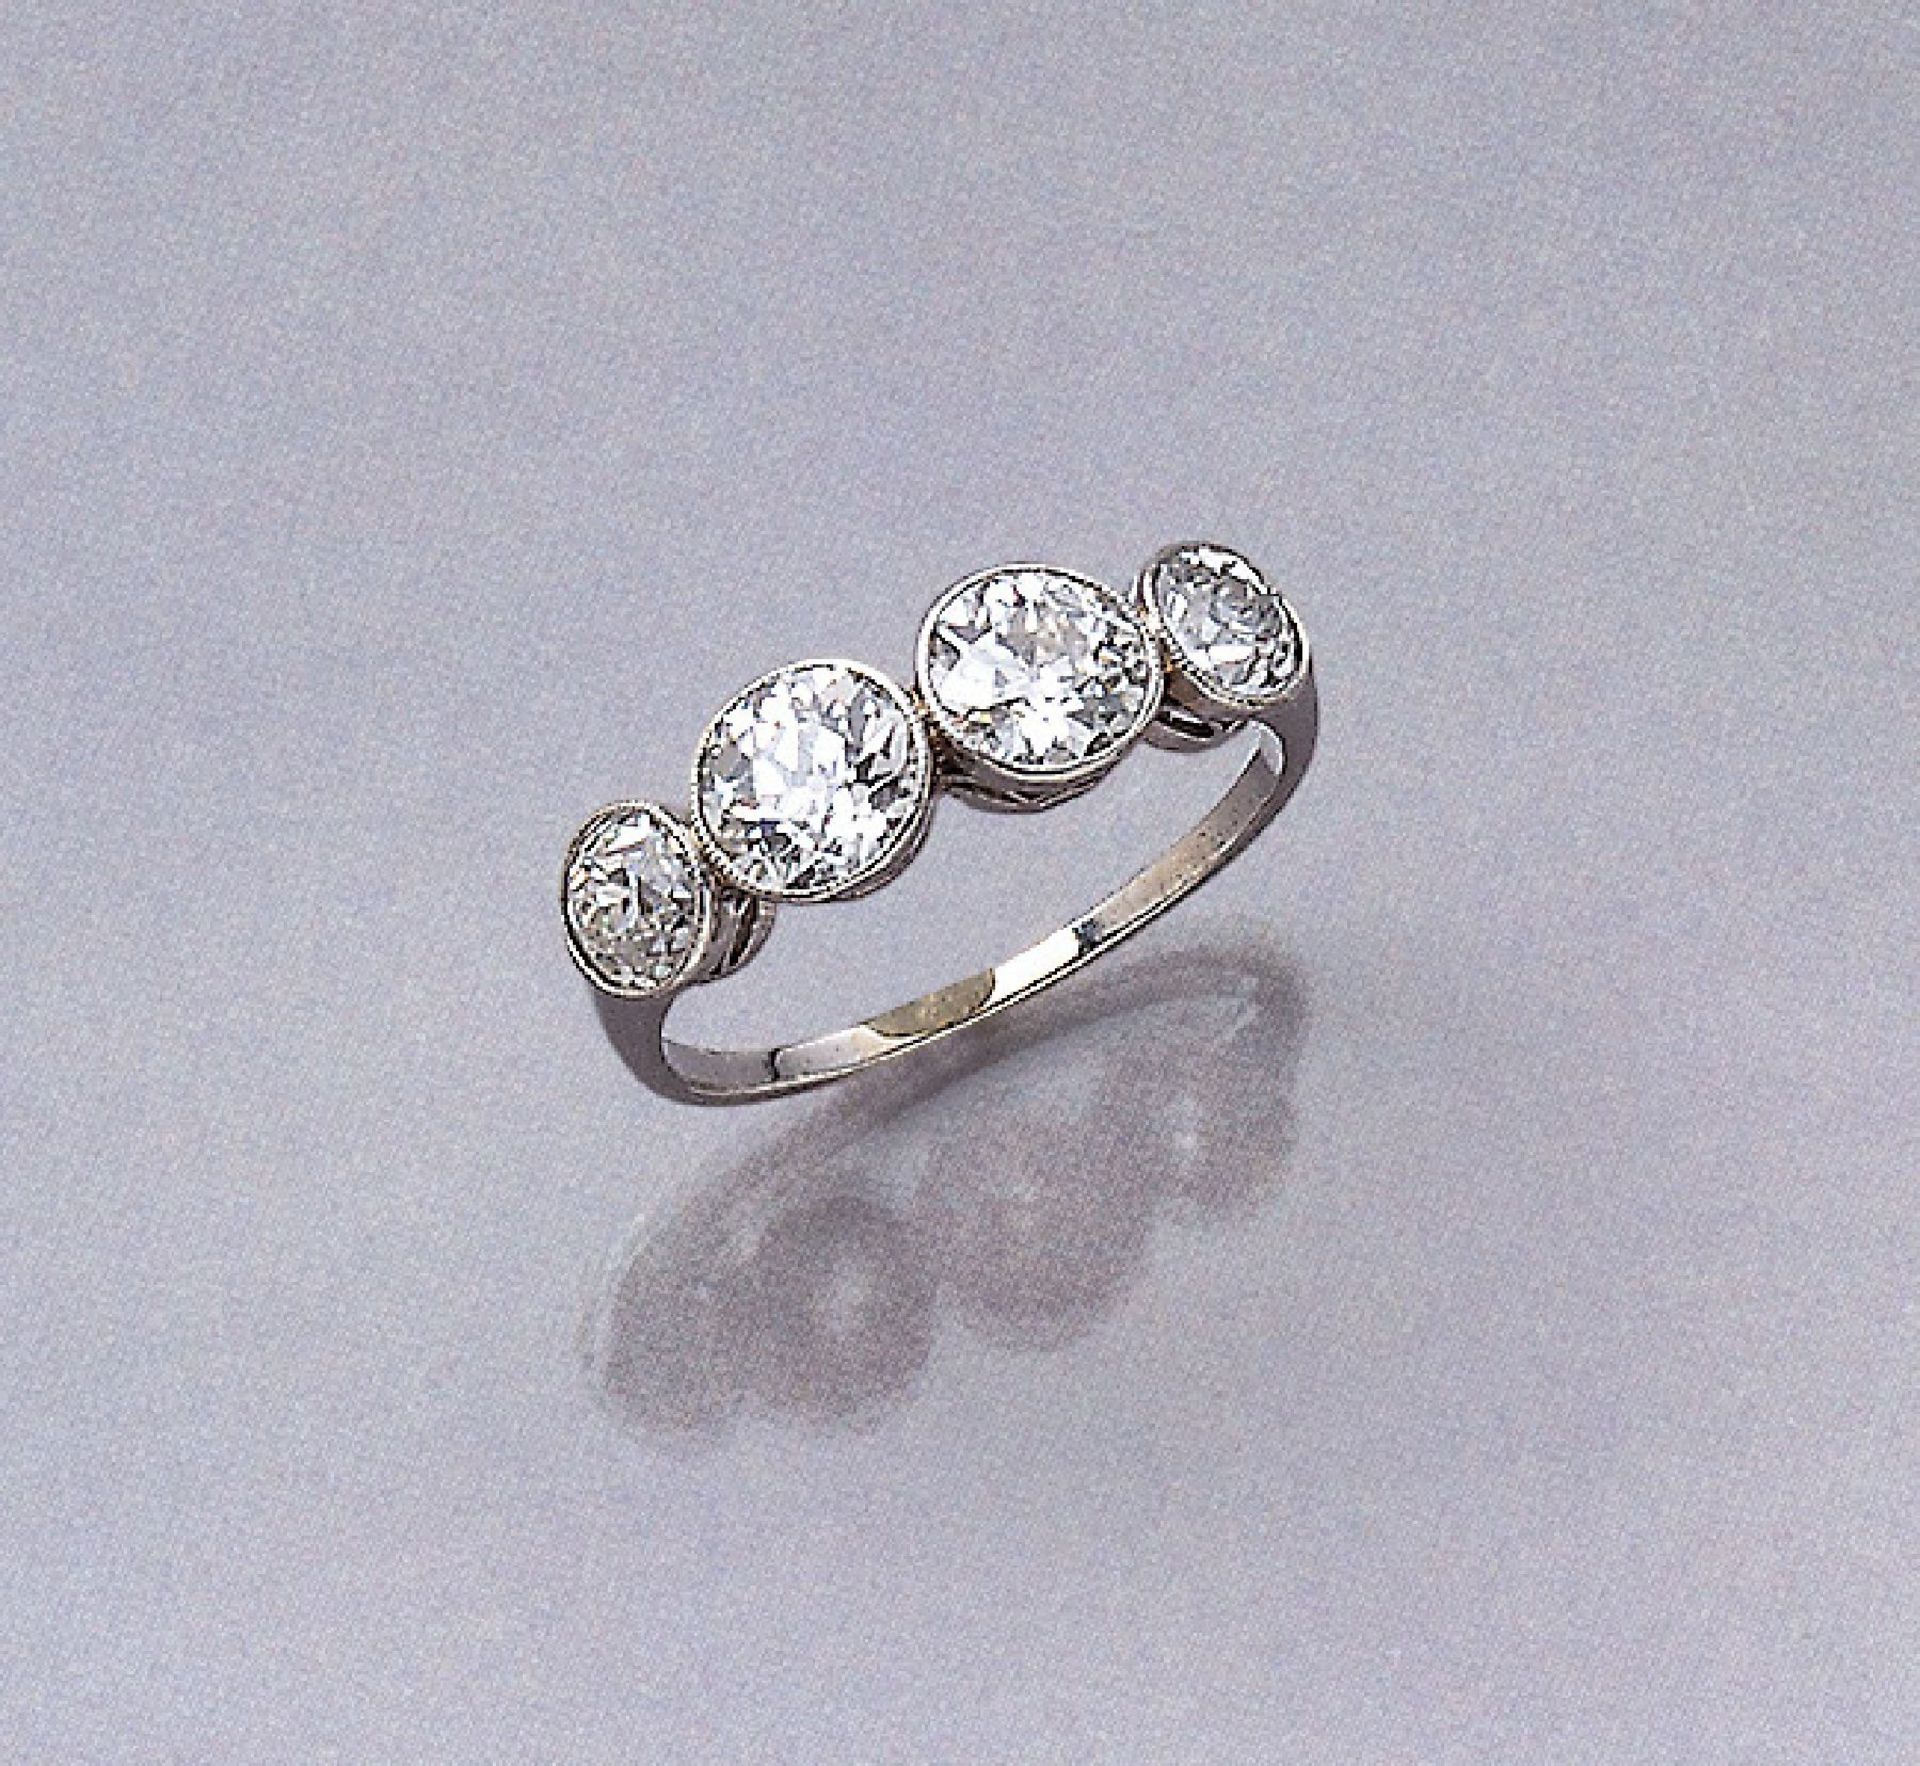 Platin Ring mit Diamanten, um 1900, mittige2 Altschliffdiamanten zus. ca. 2.00 ct, seitl.2